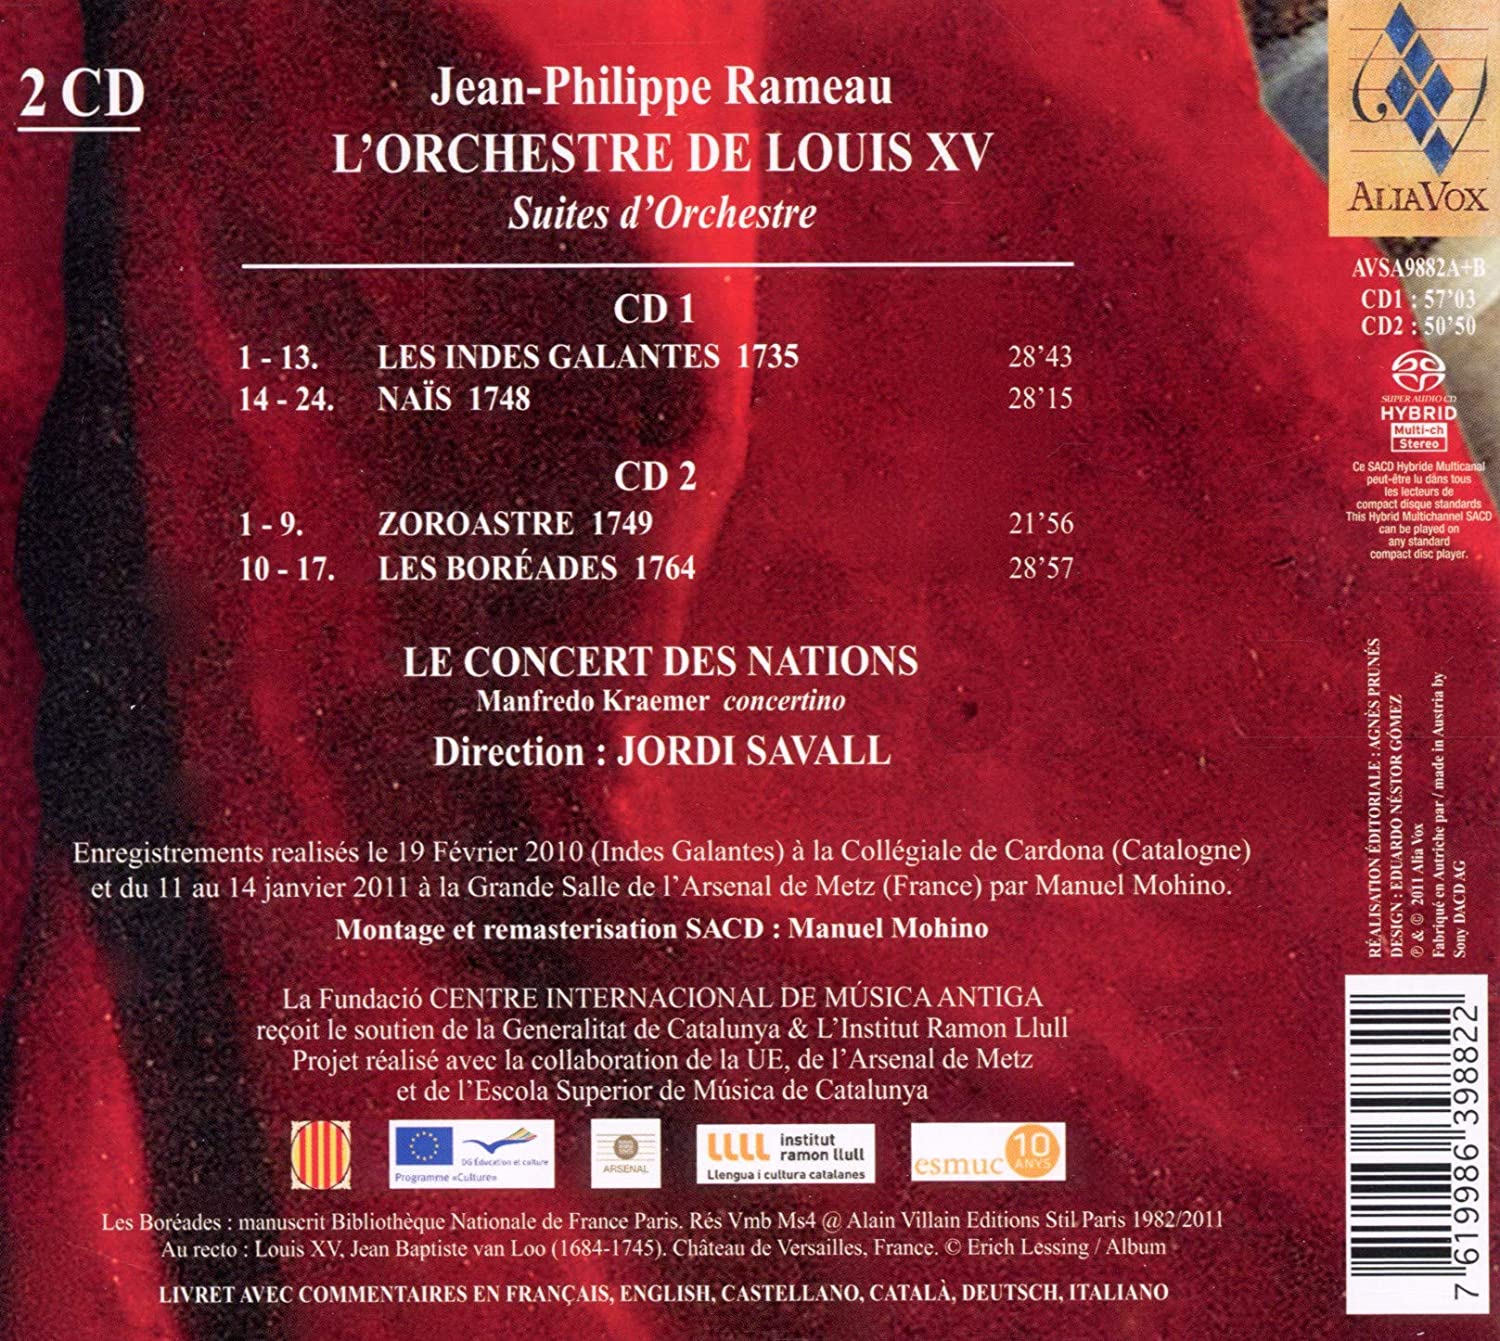 Rameau: L'Orchestre de Louis XV - suity orkiestrowe z oper Les Indes Galantes, Naïs, Zoroastre, Les Boréades - slide-1